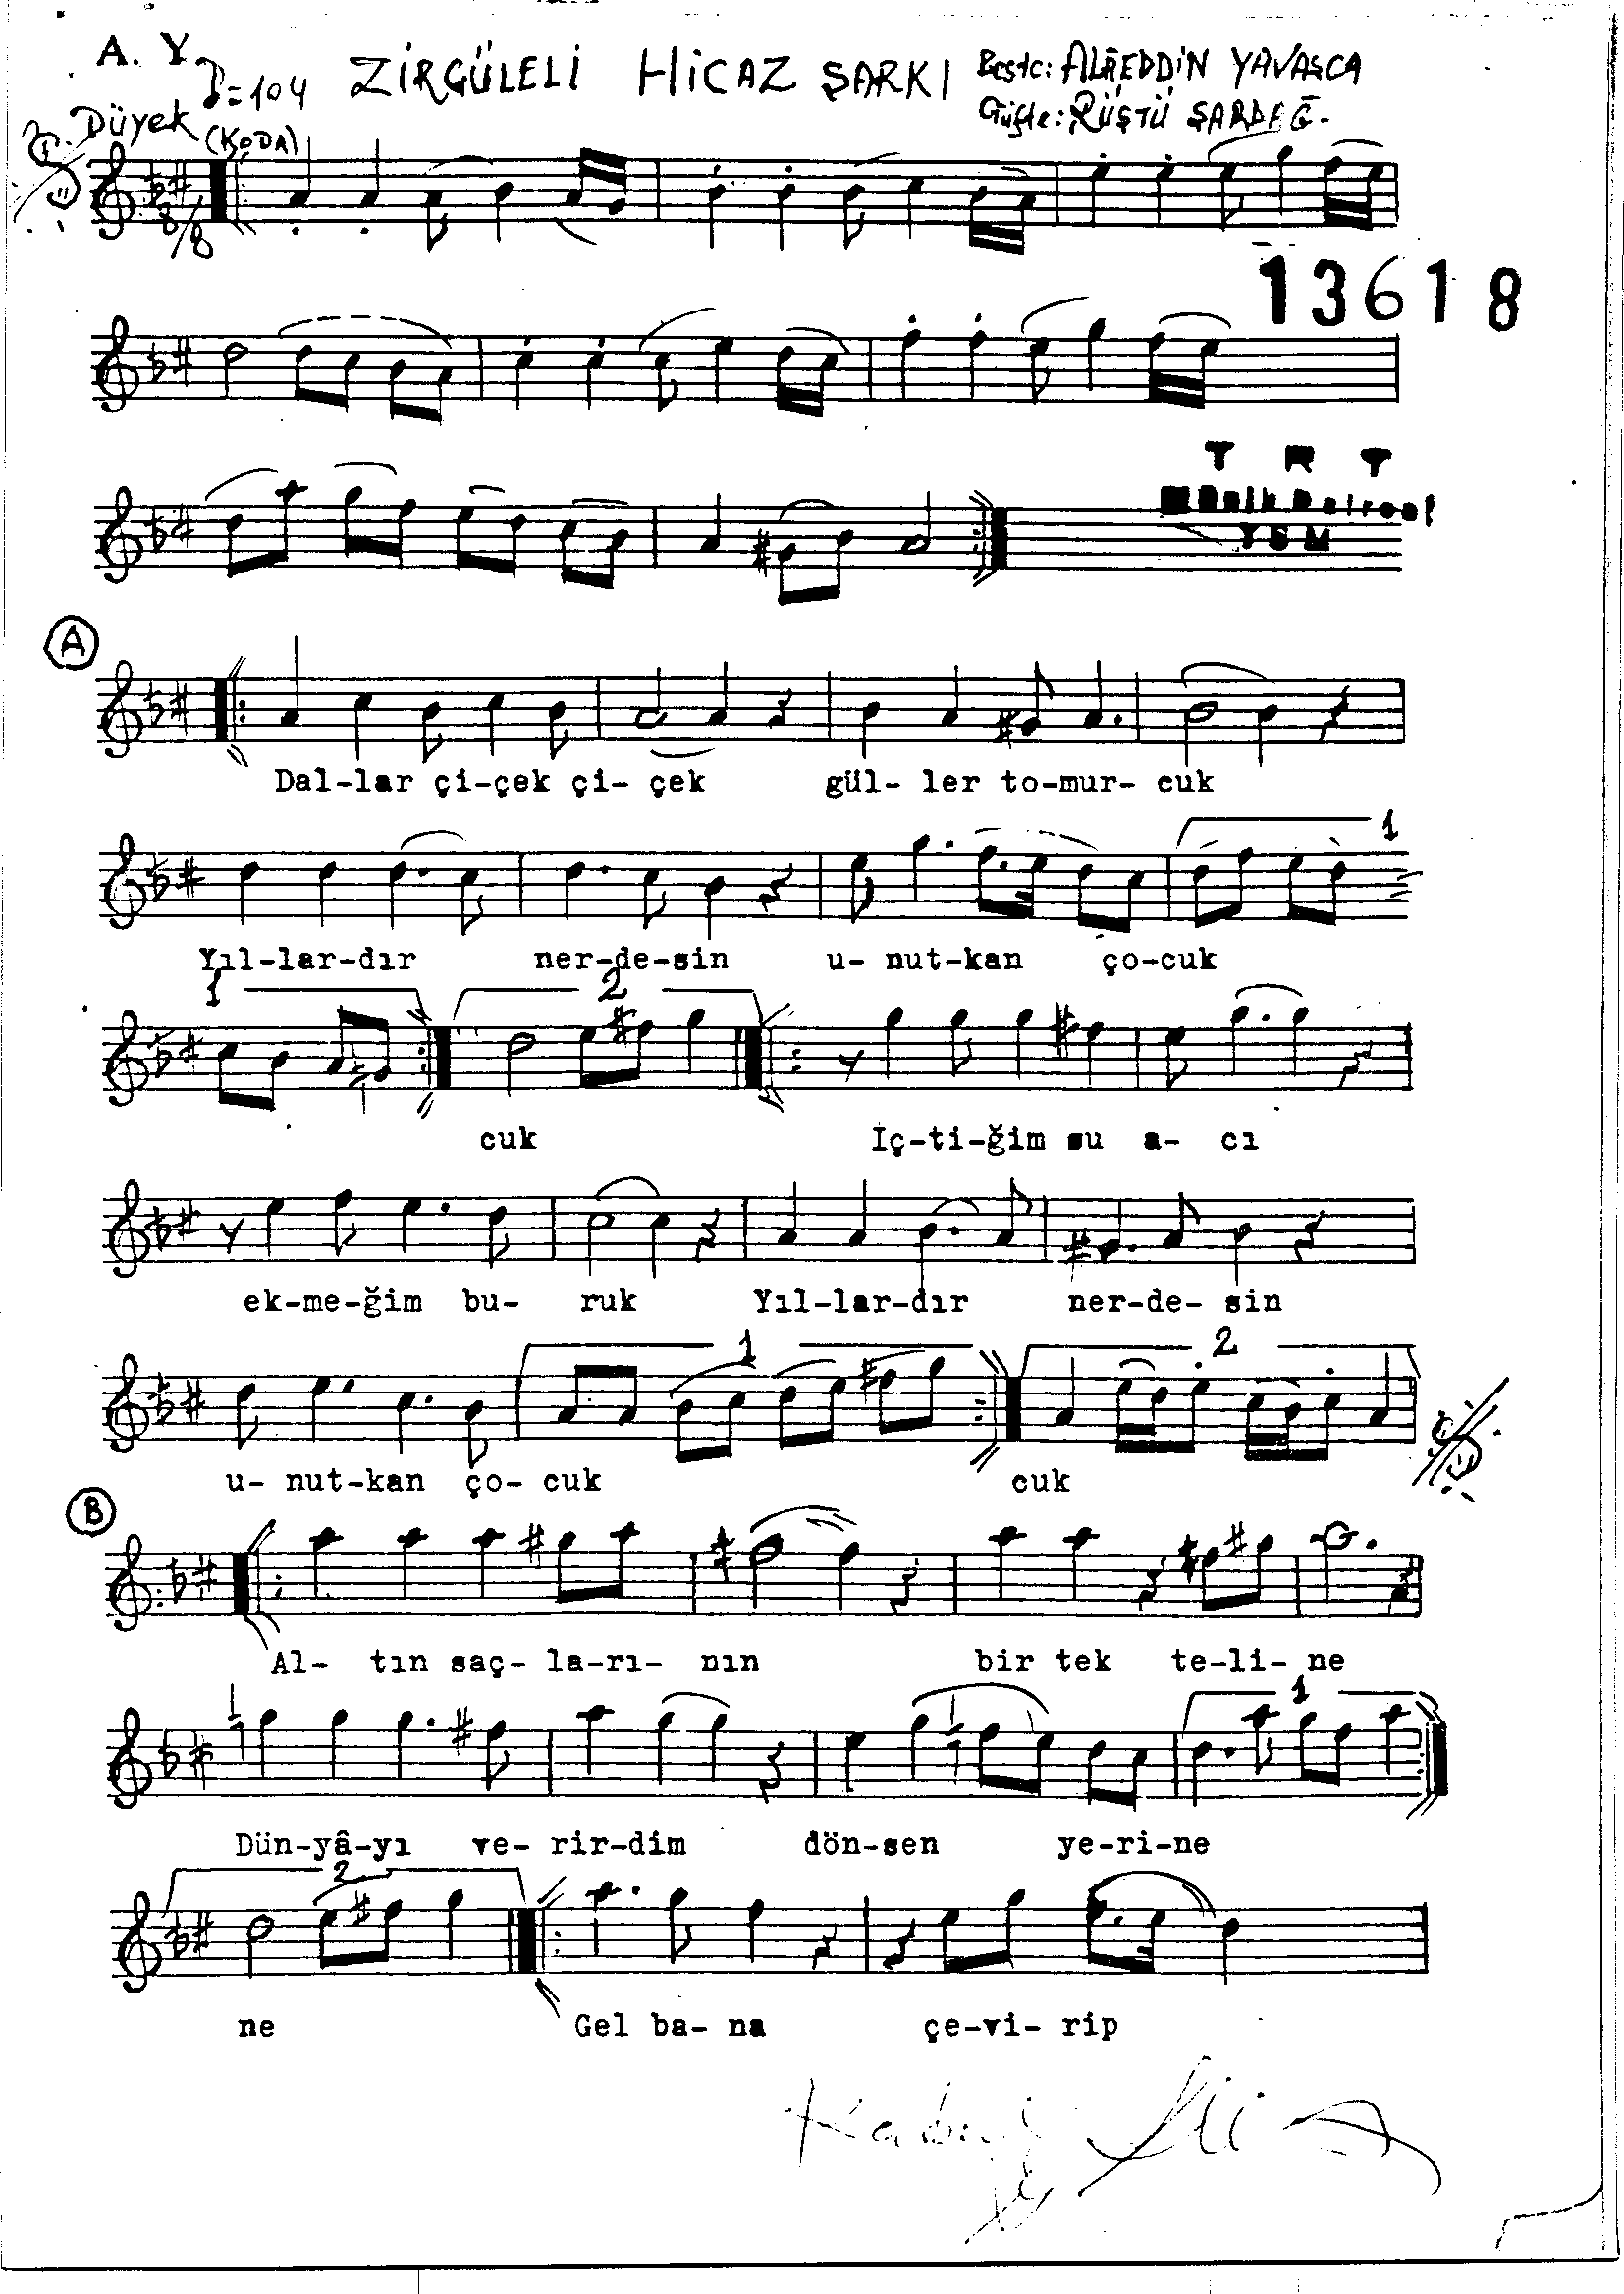 Hicâz - Şarkı - Alâeddin Yavaşça - Sayfa 1